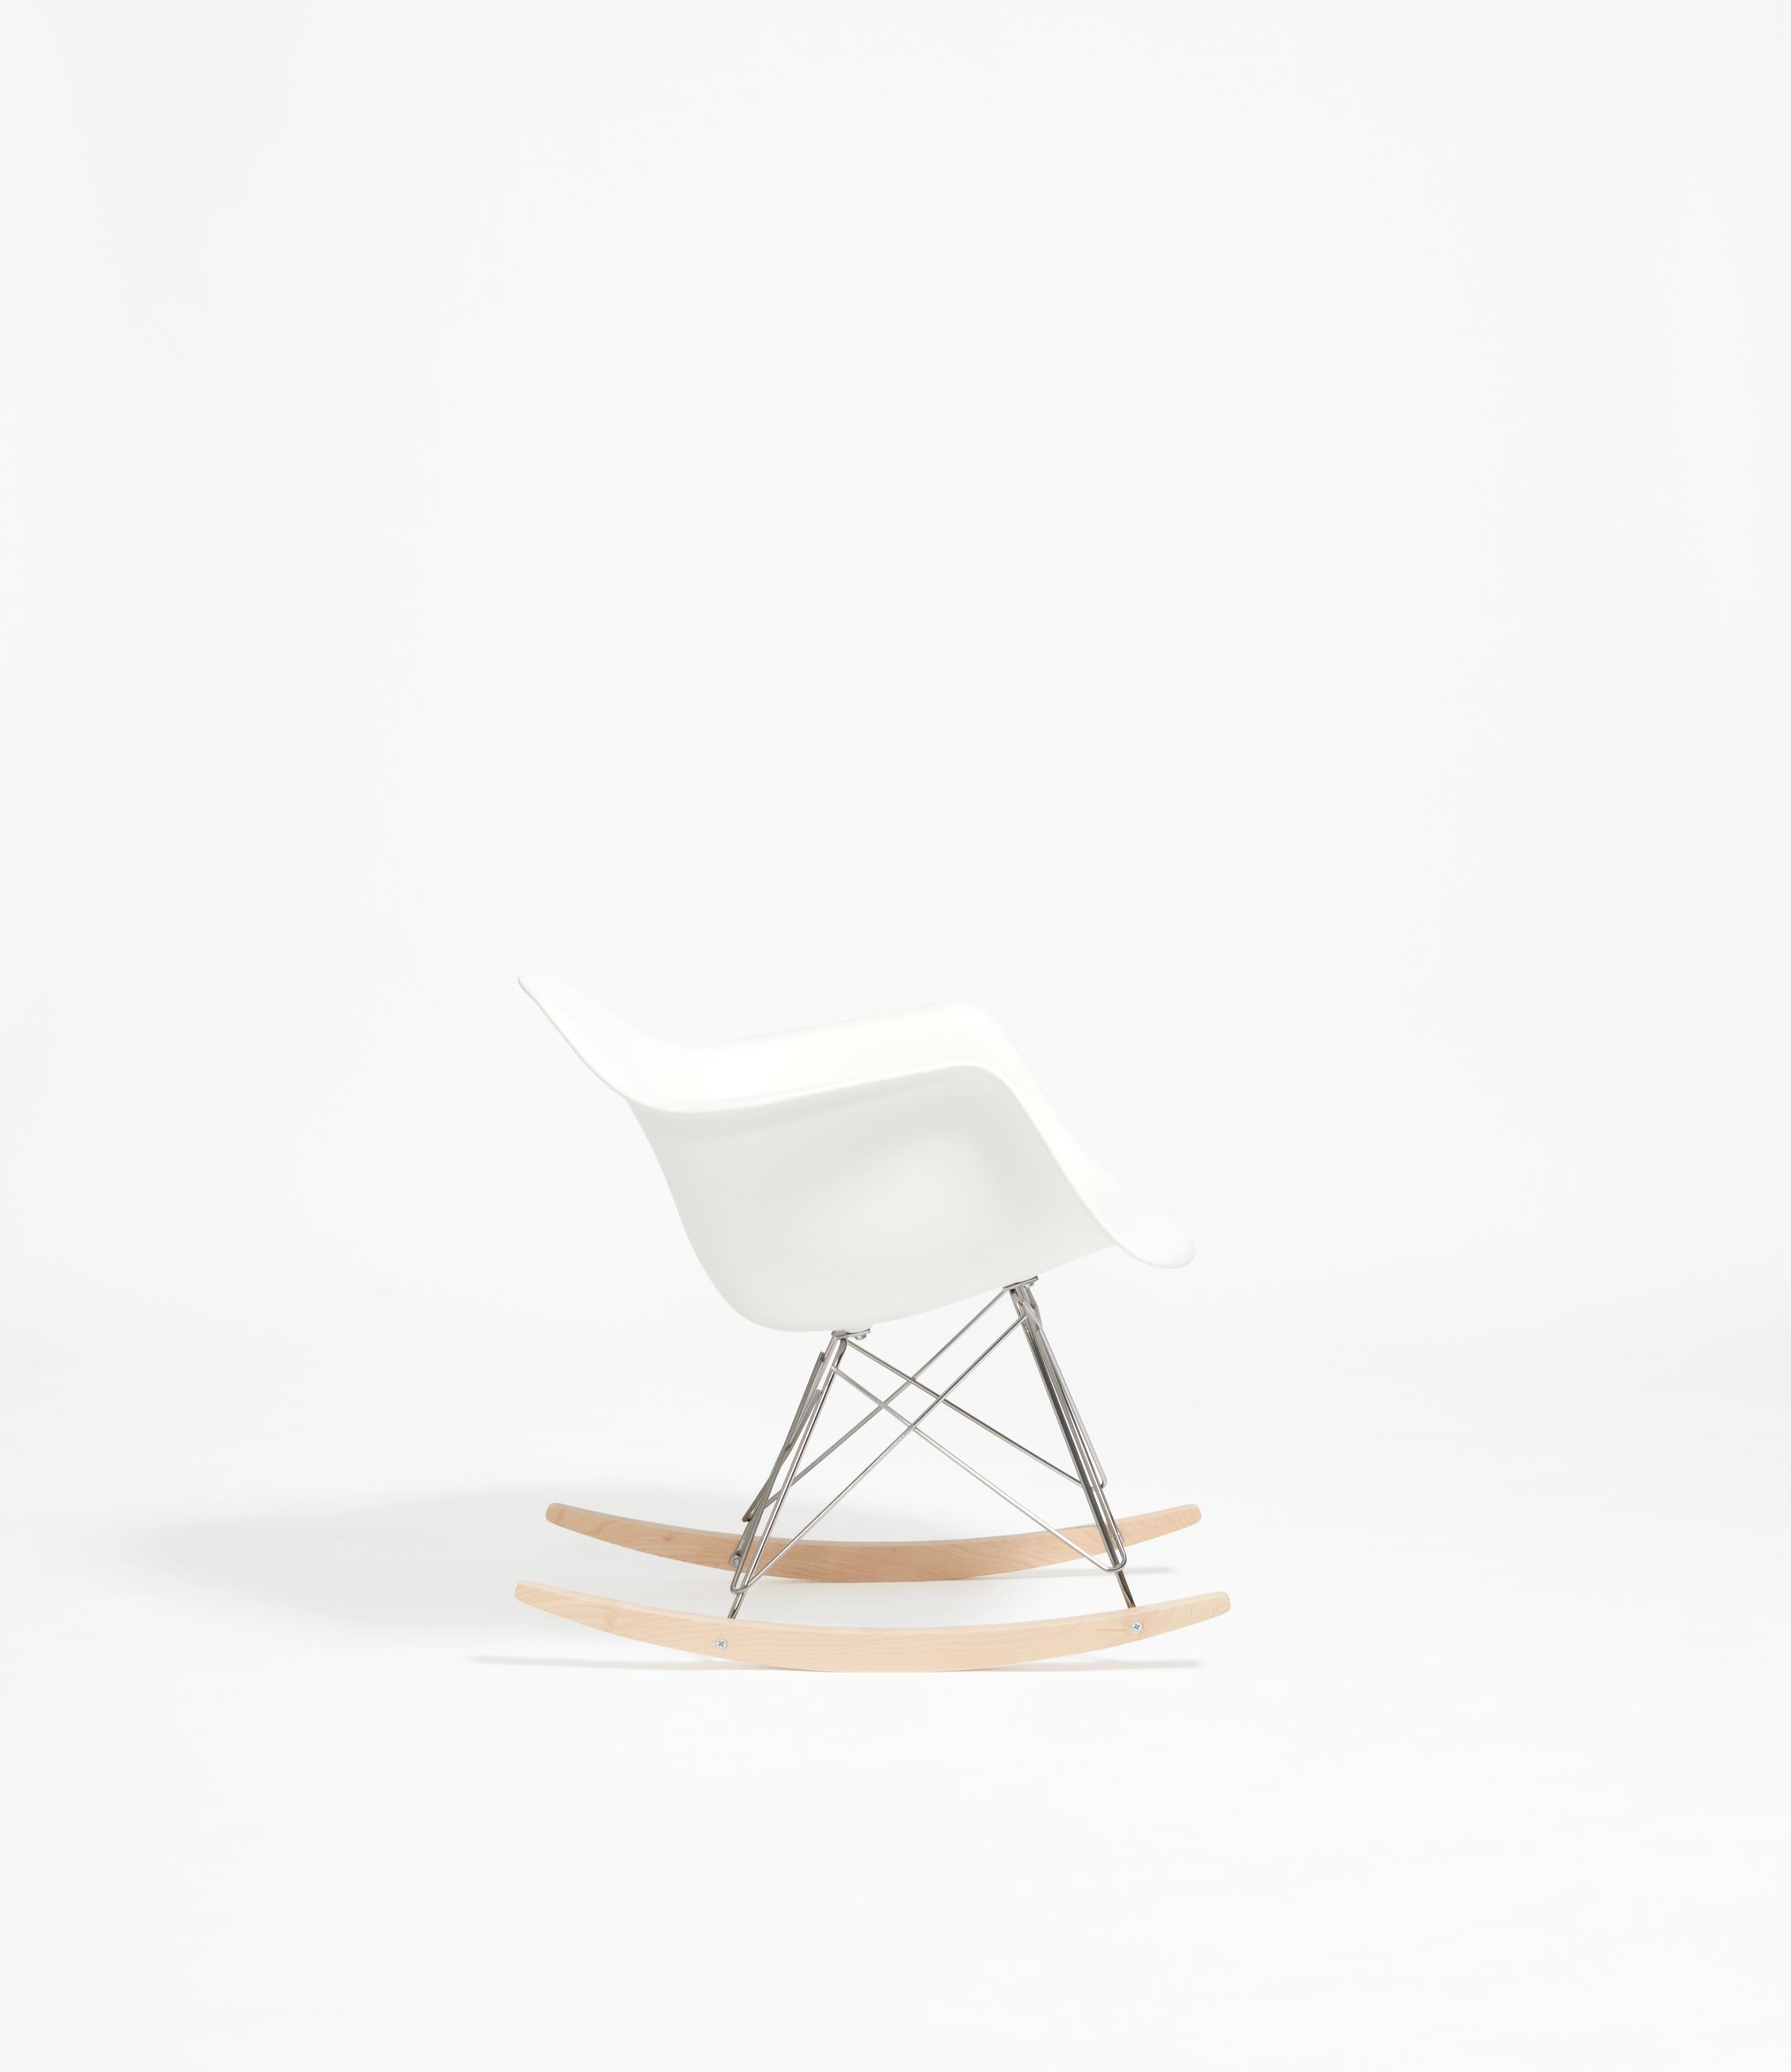 Die von Charles und Ray Eames für Vitra entworfene Serie von Kunststoffstühlen gehört zu den bekanntesten amerikanischen Möbeldesigns. Aus dieser großen Stuhlfamilie ragt der Rocking Armchair Rod Base (RAR) heraus, der aus einer leichten Sitzschale